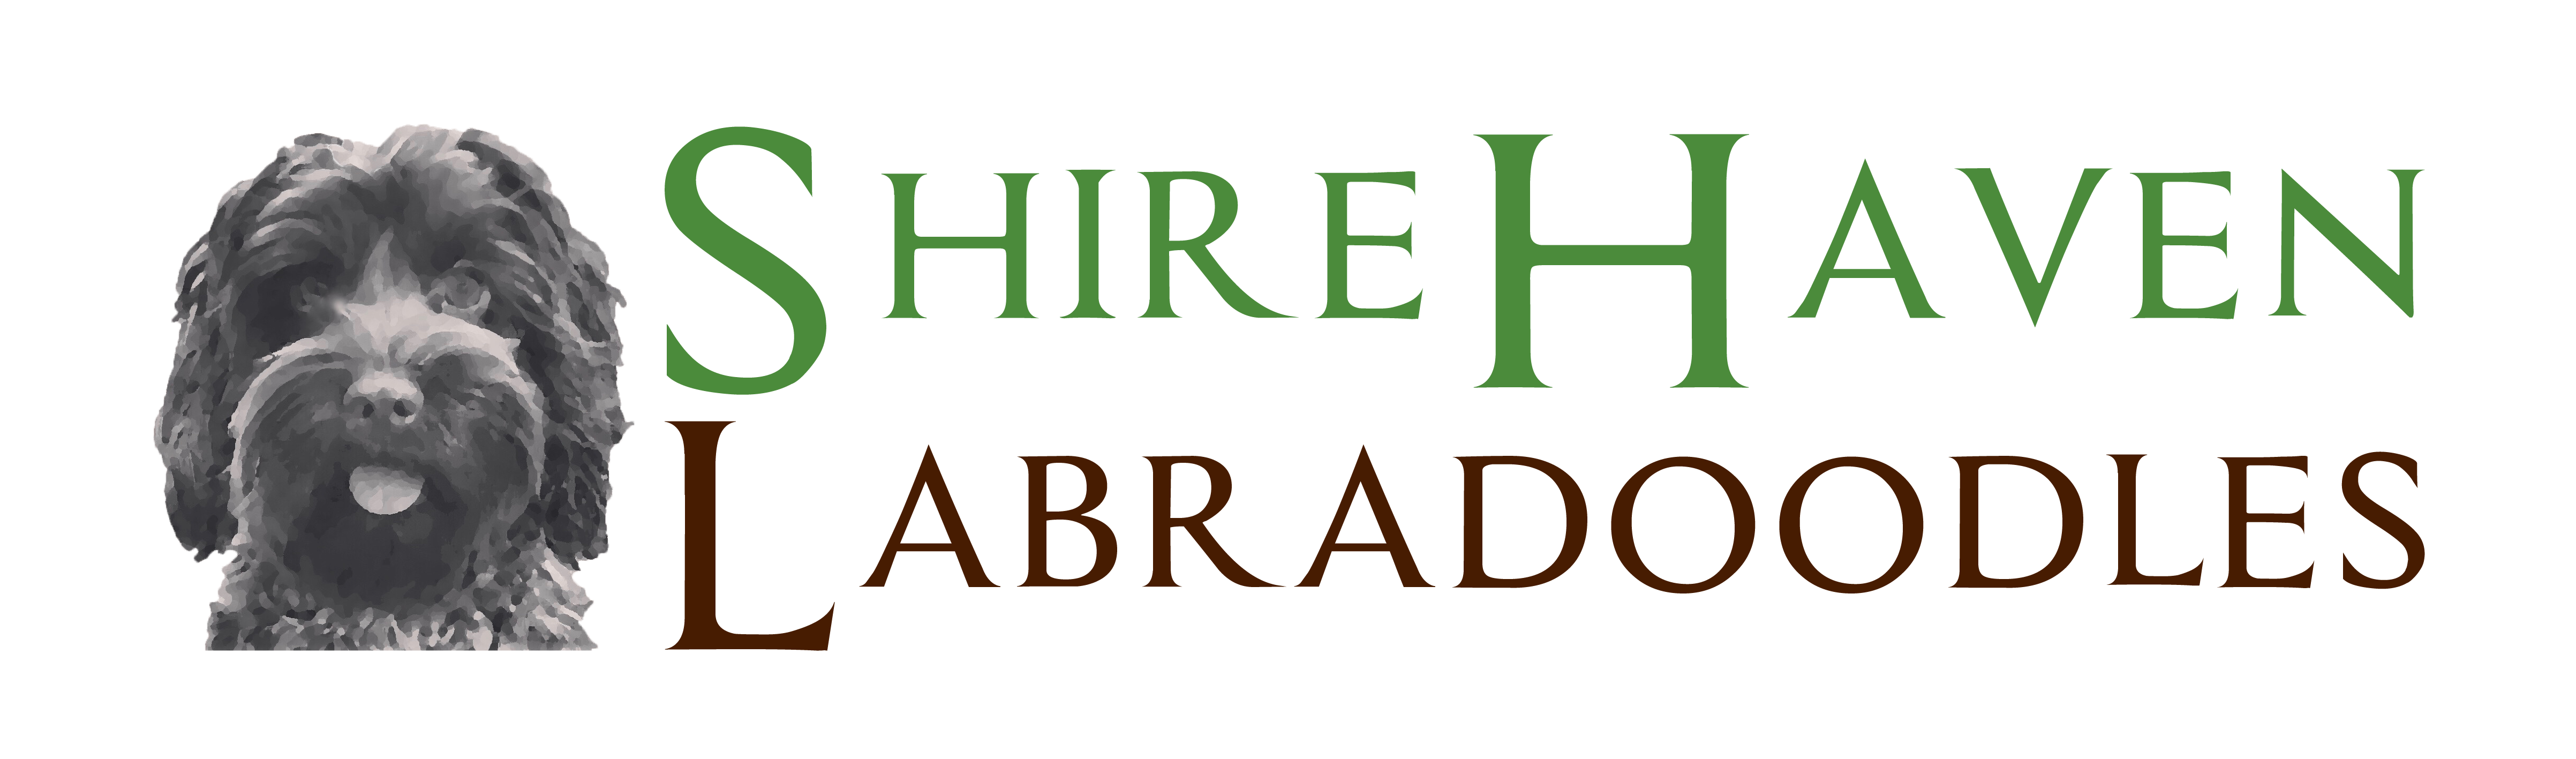 Shire Haven Labradoodles